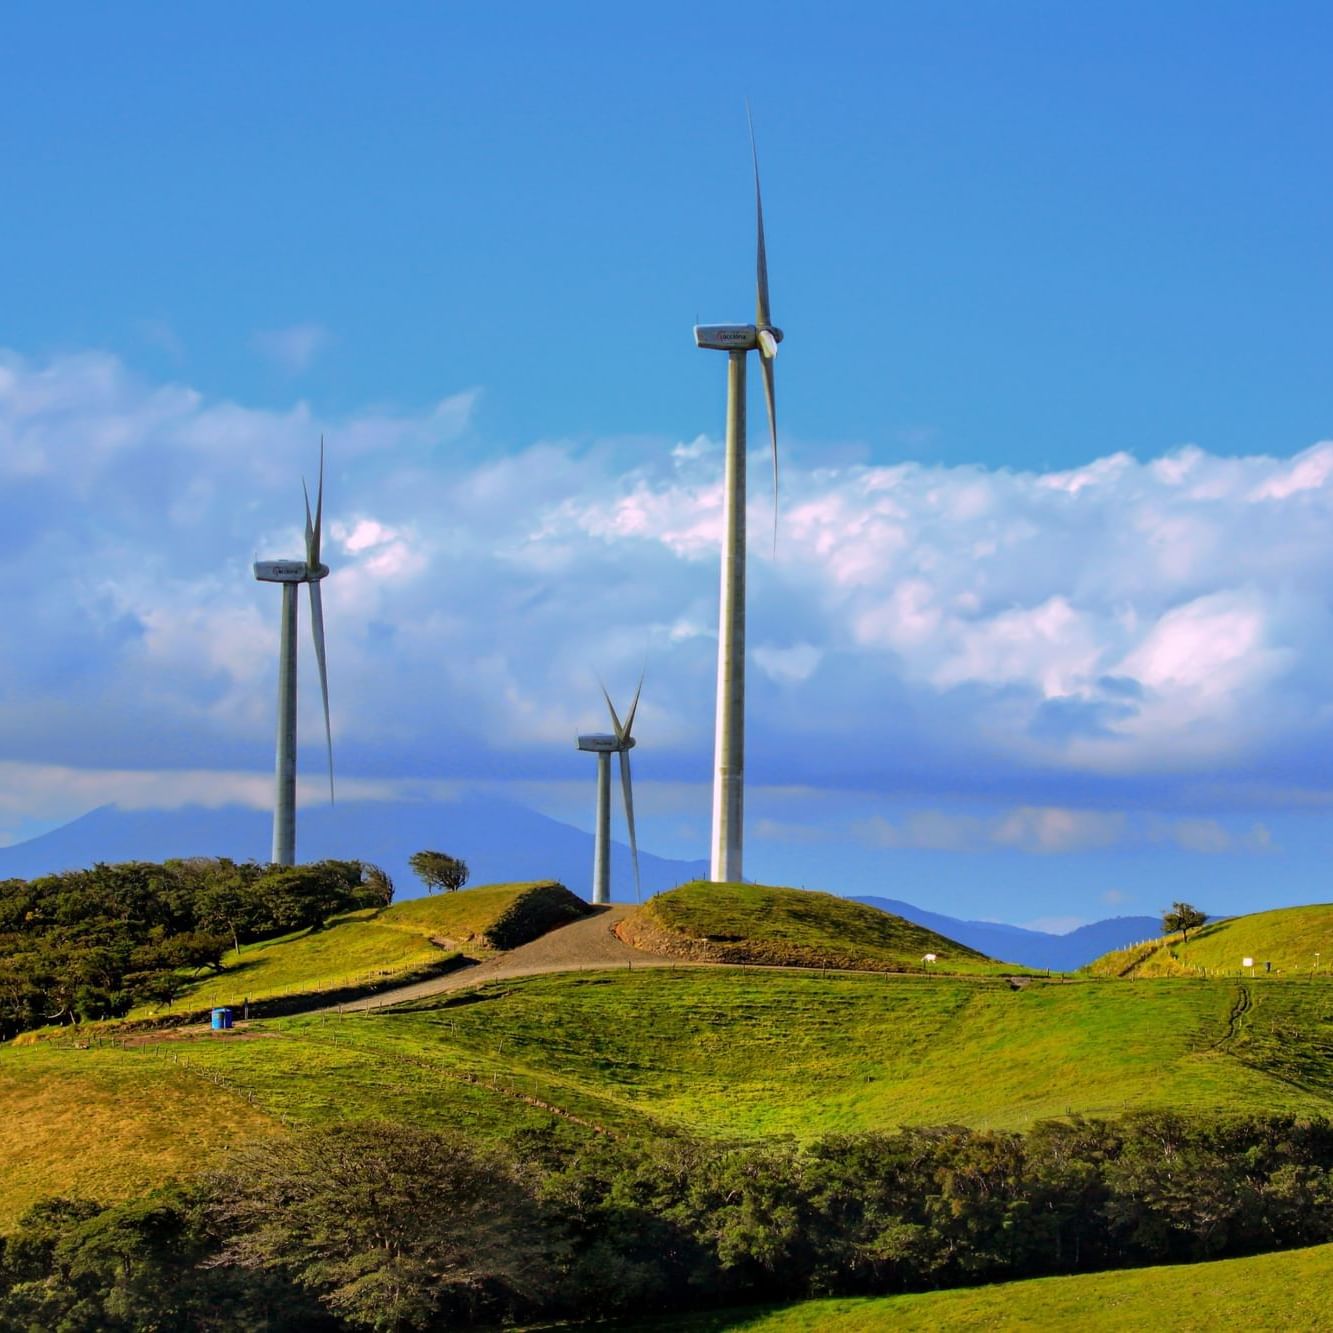 Landscape view of wind turbines near Buena Vista Del Rincon